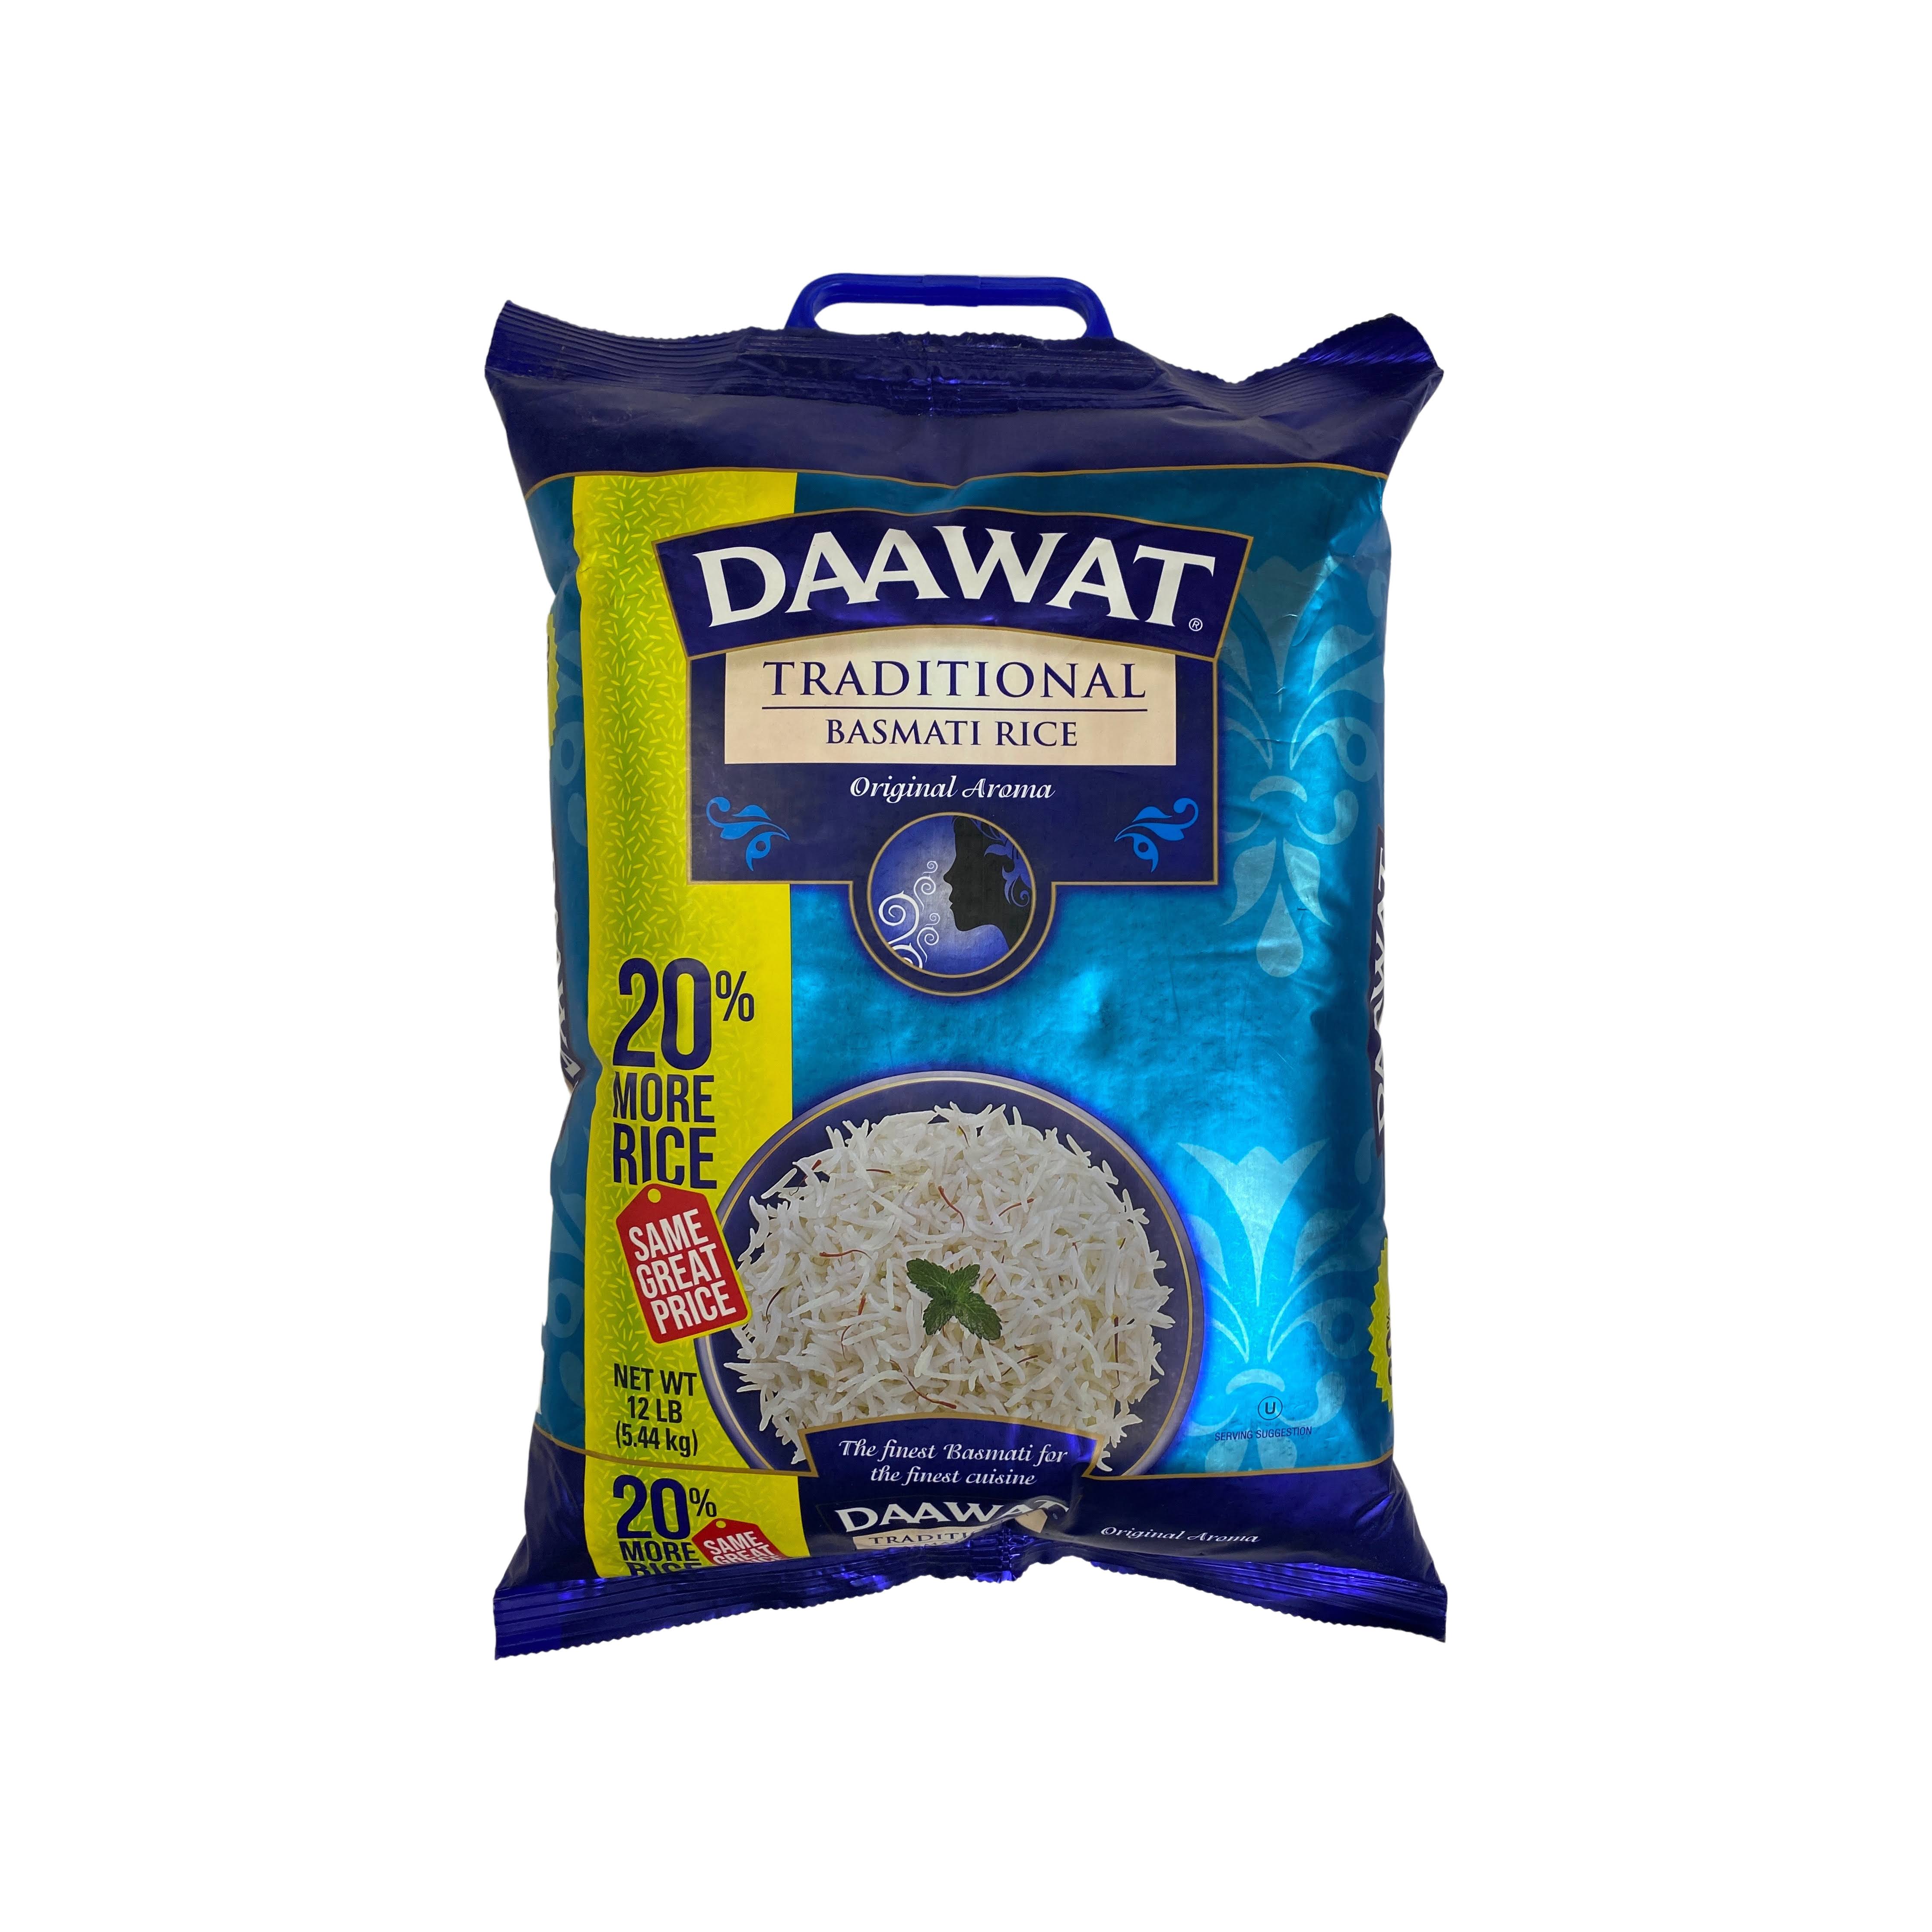 Daawat Traditional Basmati Rice - 10lbs